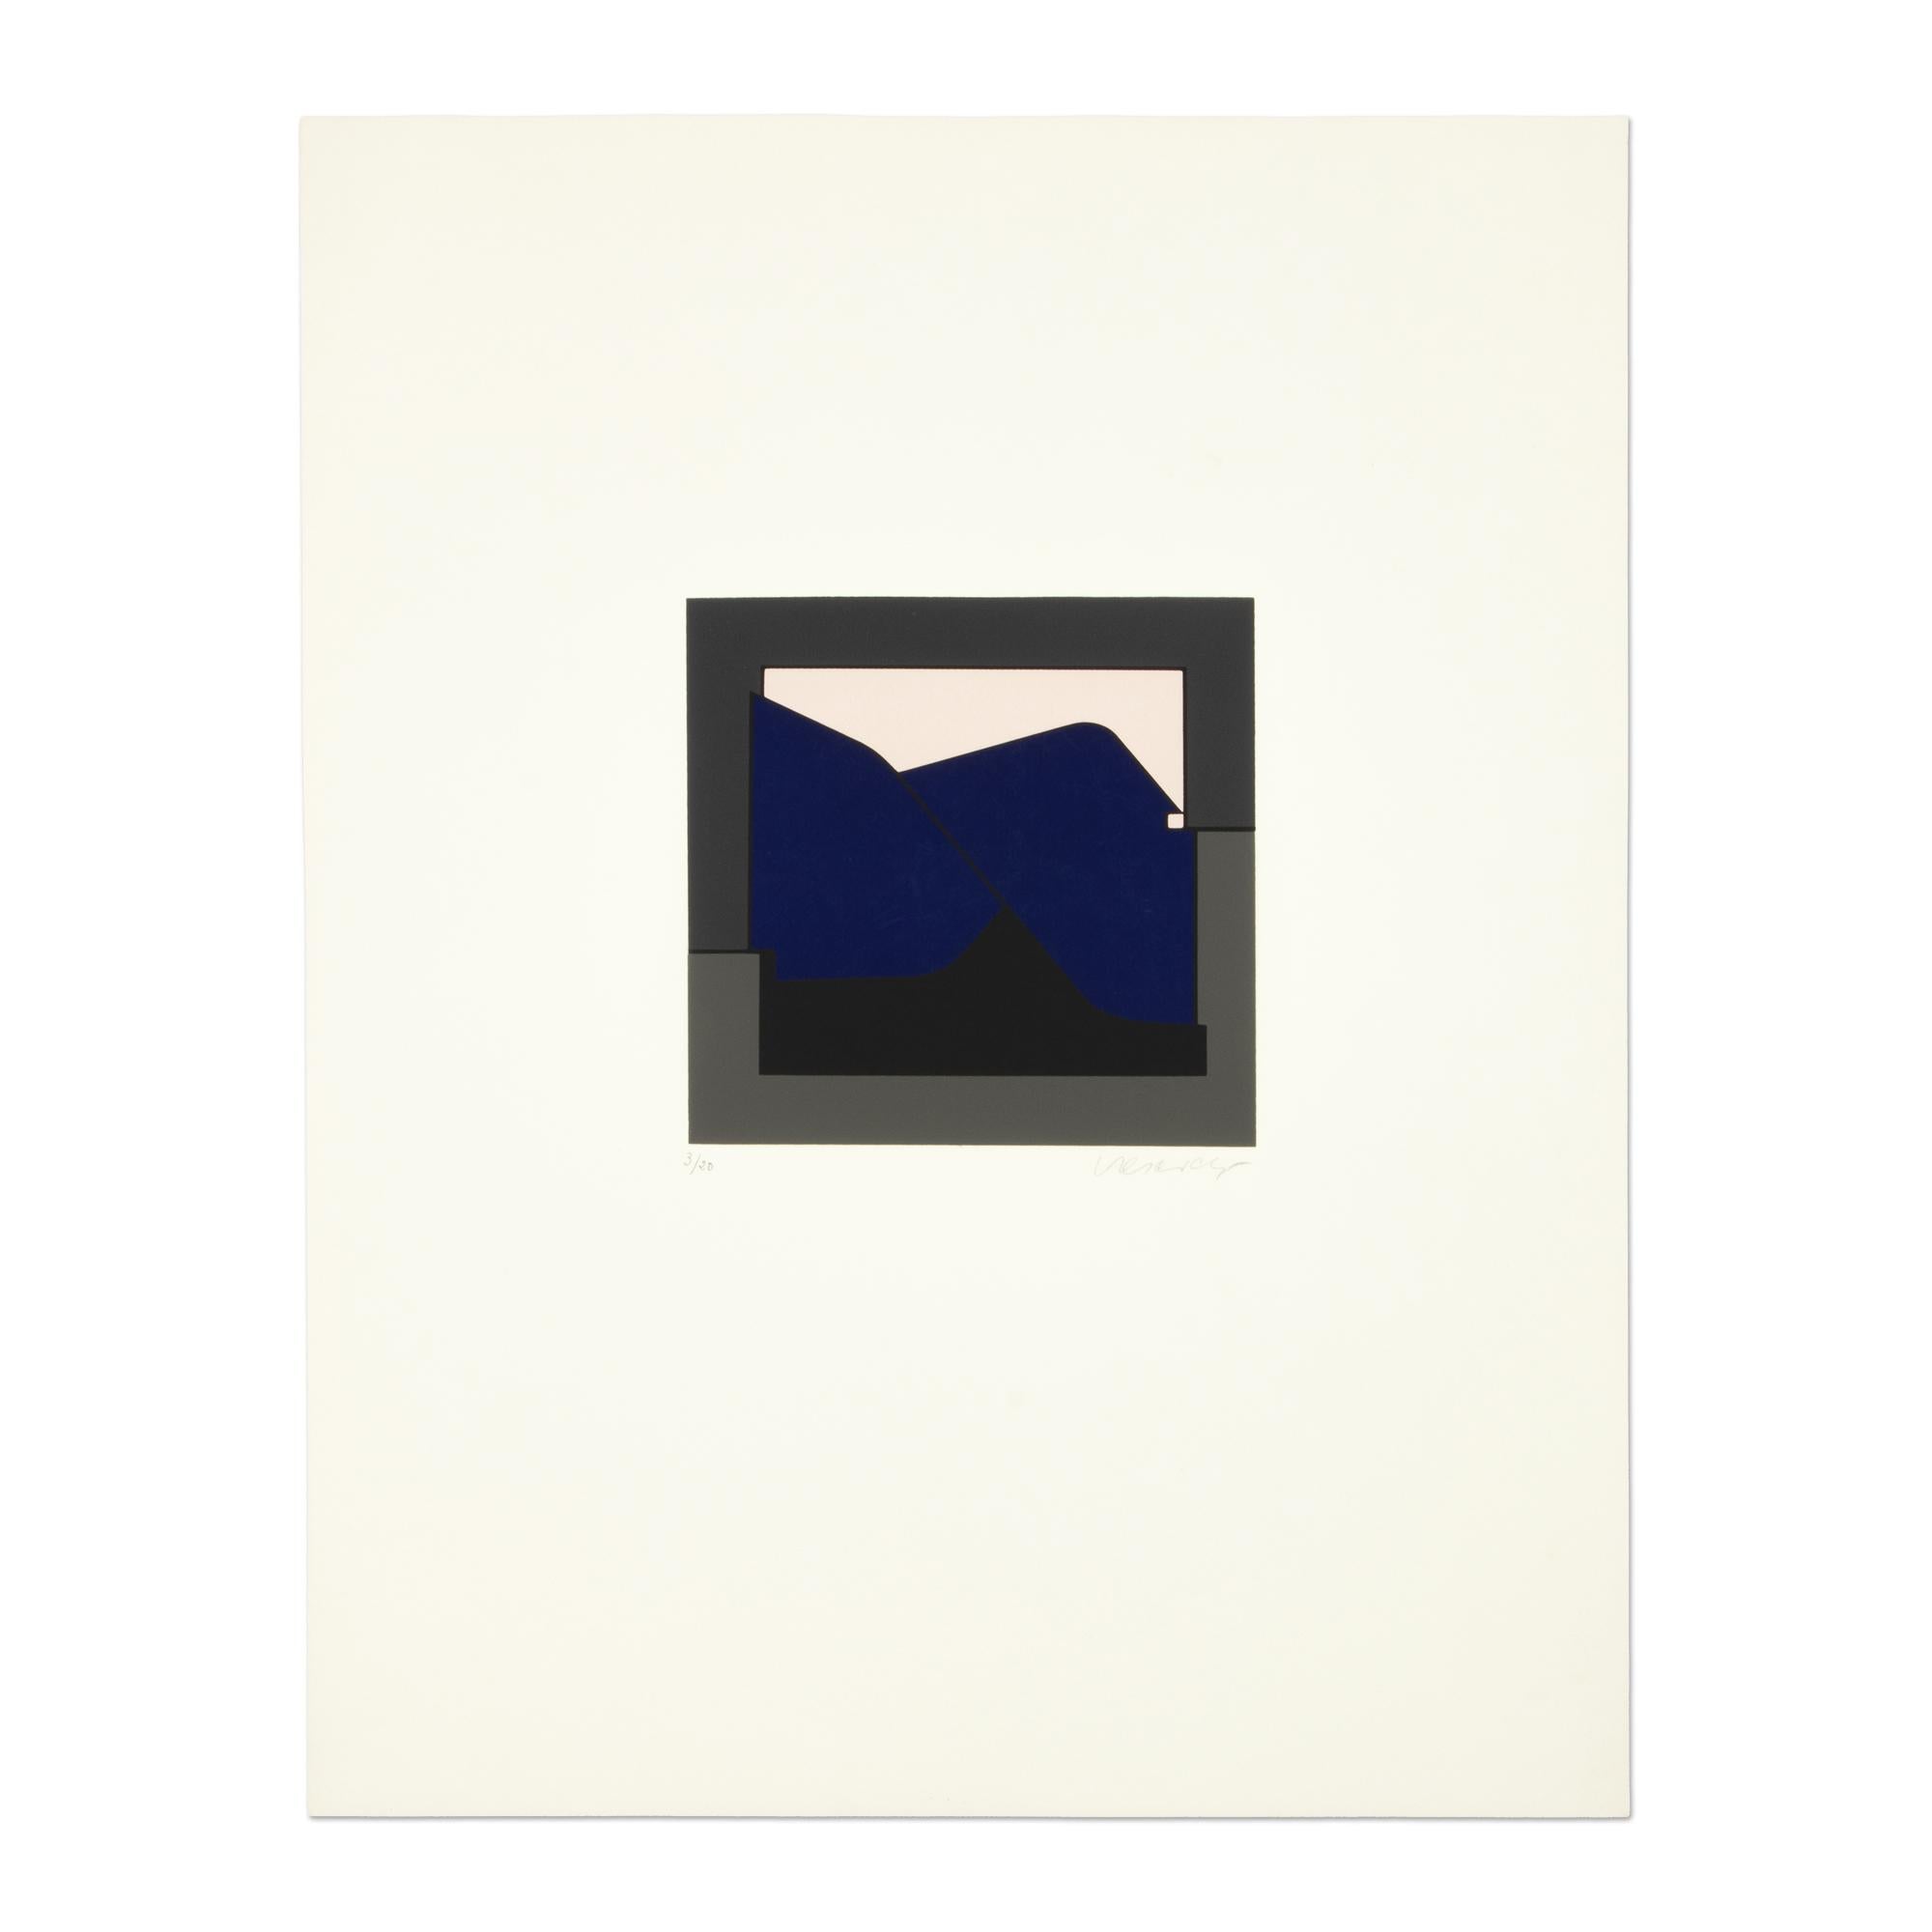 Victor Vasarely (franco-hongrois, 1906-1997)
Kandahar I (extrait de l'"Album I" de la Galerie Denise René), 1955
Support : Sérigraphie en couleurs, sur papier
Dimensions : 26 × 20 1/10 in (66 × 51 cm)
Édition de 100 + 20 : signée et numérotée à la